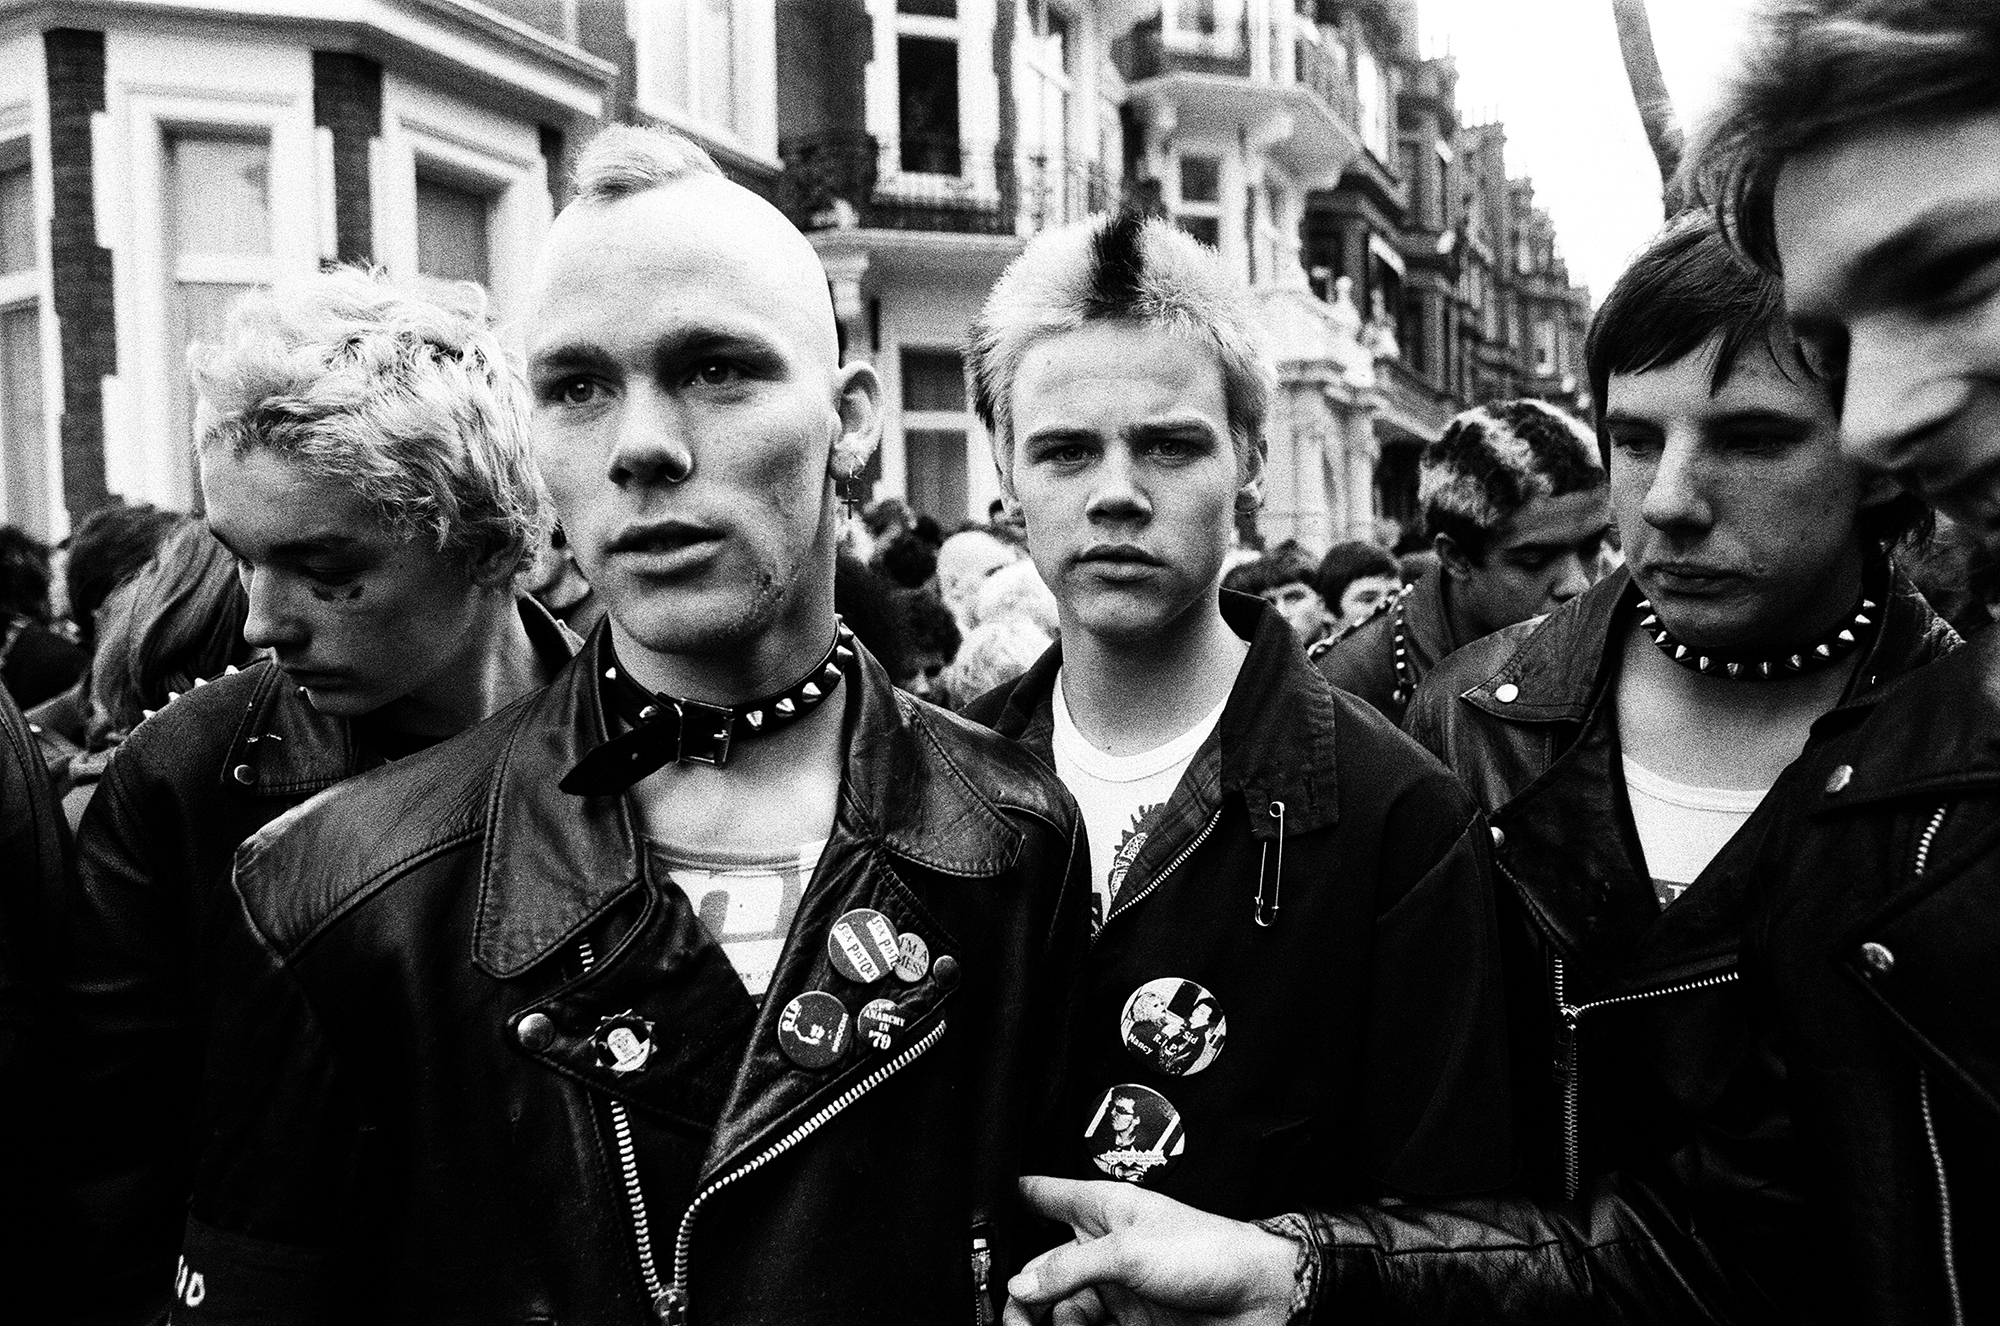 Punk rockers march in London, February 3, 1980.